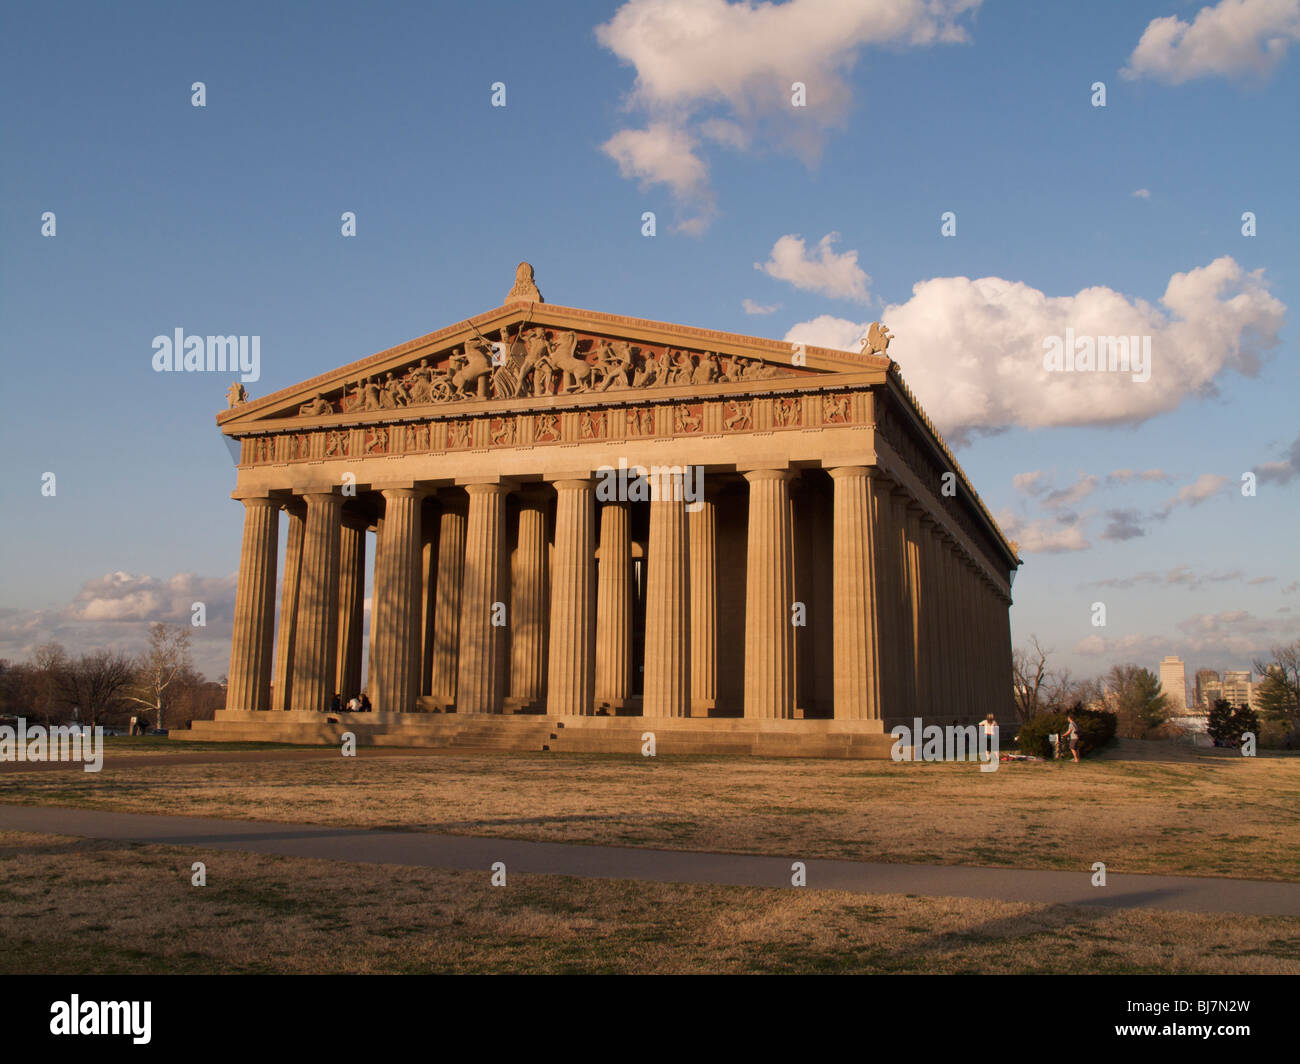 Réplique grandeur nature du Parthénon. Centennial Park, Nashville, Tennessee. Banque D'Images